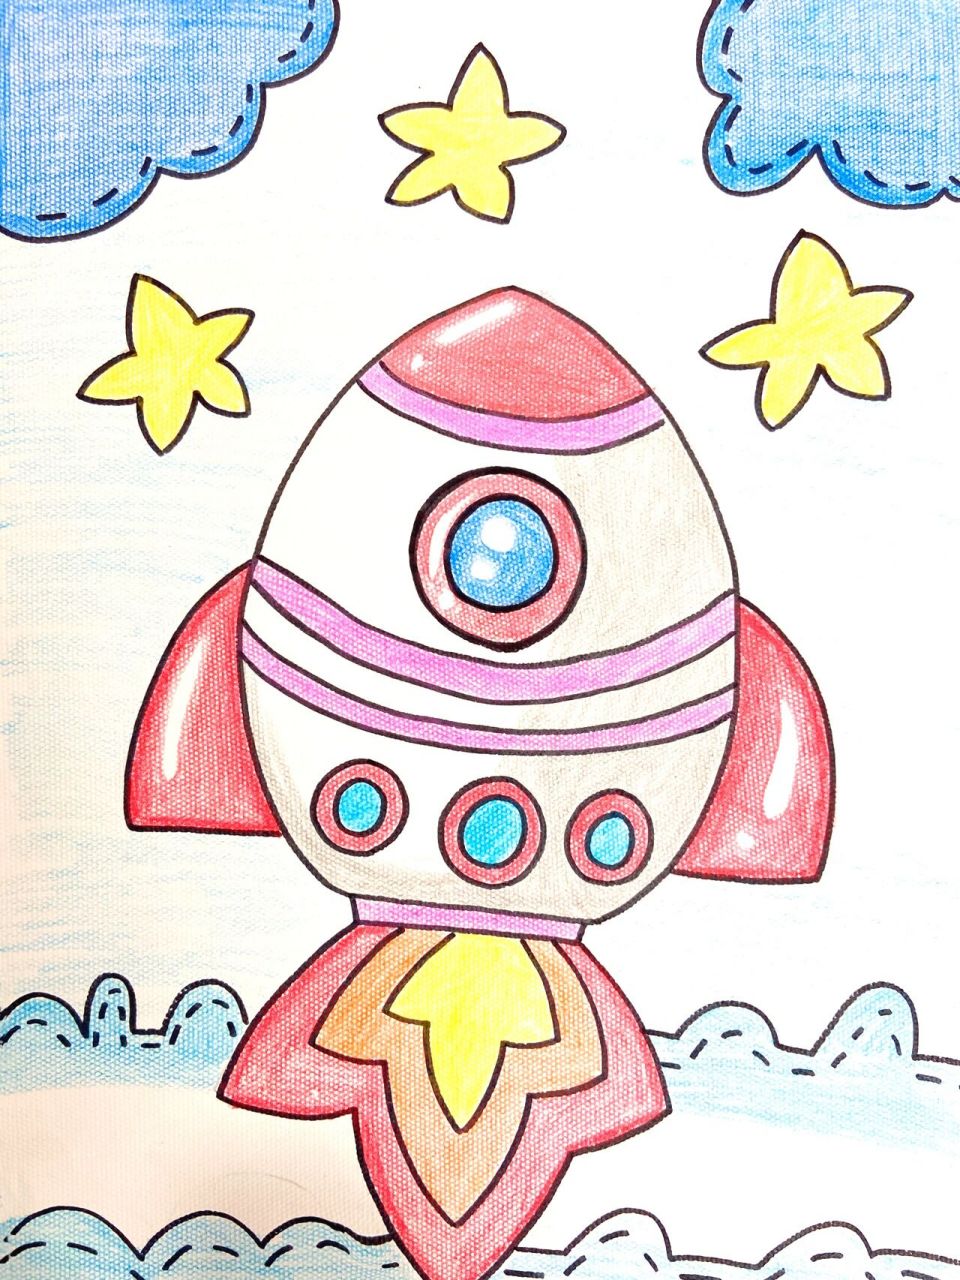 太空火箭简笔画带涂色图片